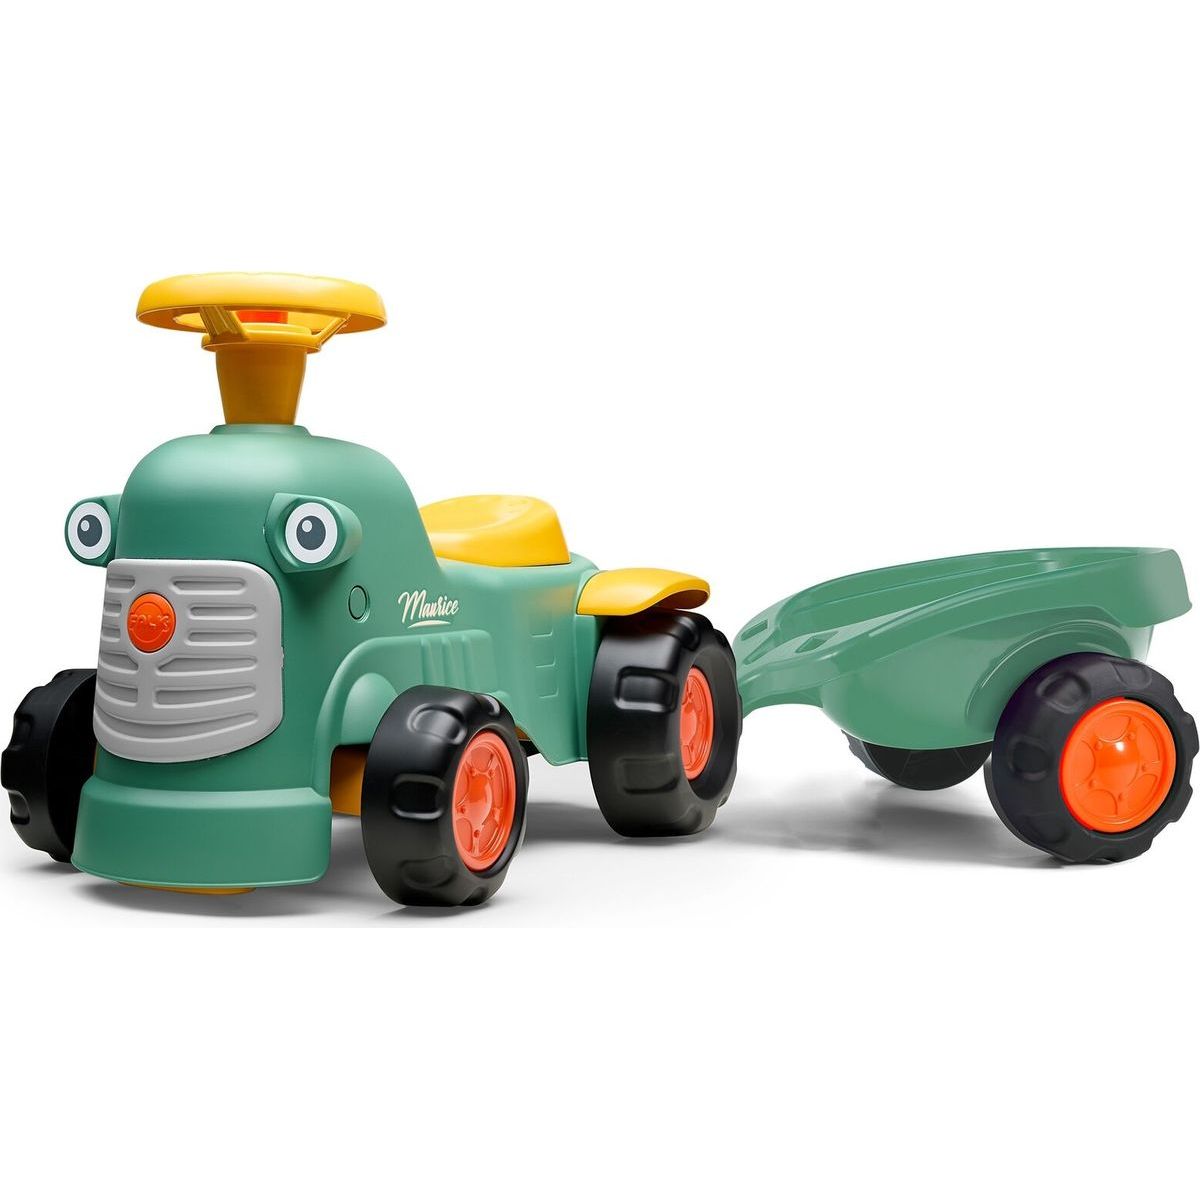 Falk Odstrkovadlo – traktor Maurice zelený s valníkem